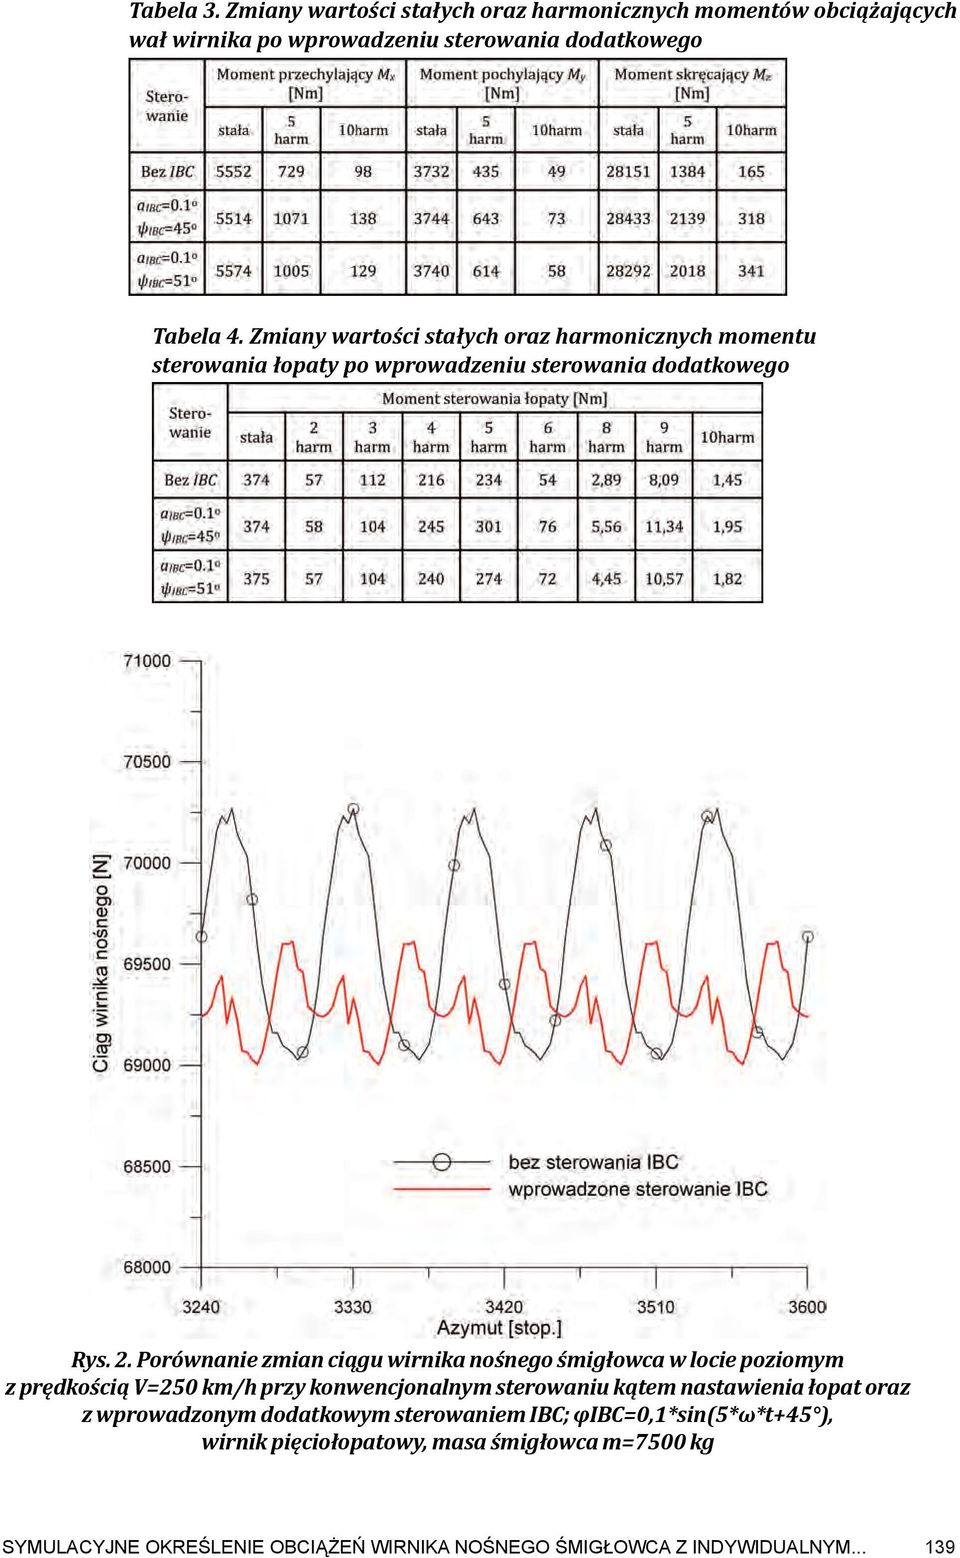 Porównanie zmian ciągu wirnika nośnego śmigłowca w locie poziomym z prędkością V=250 km/h przy konwencjonalnym sterowaniu kątem nastawienia łopat